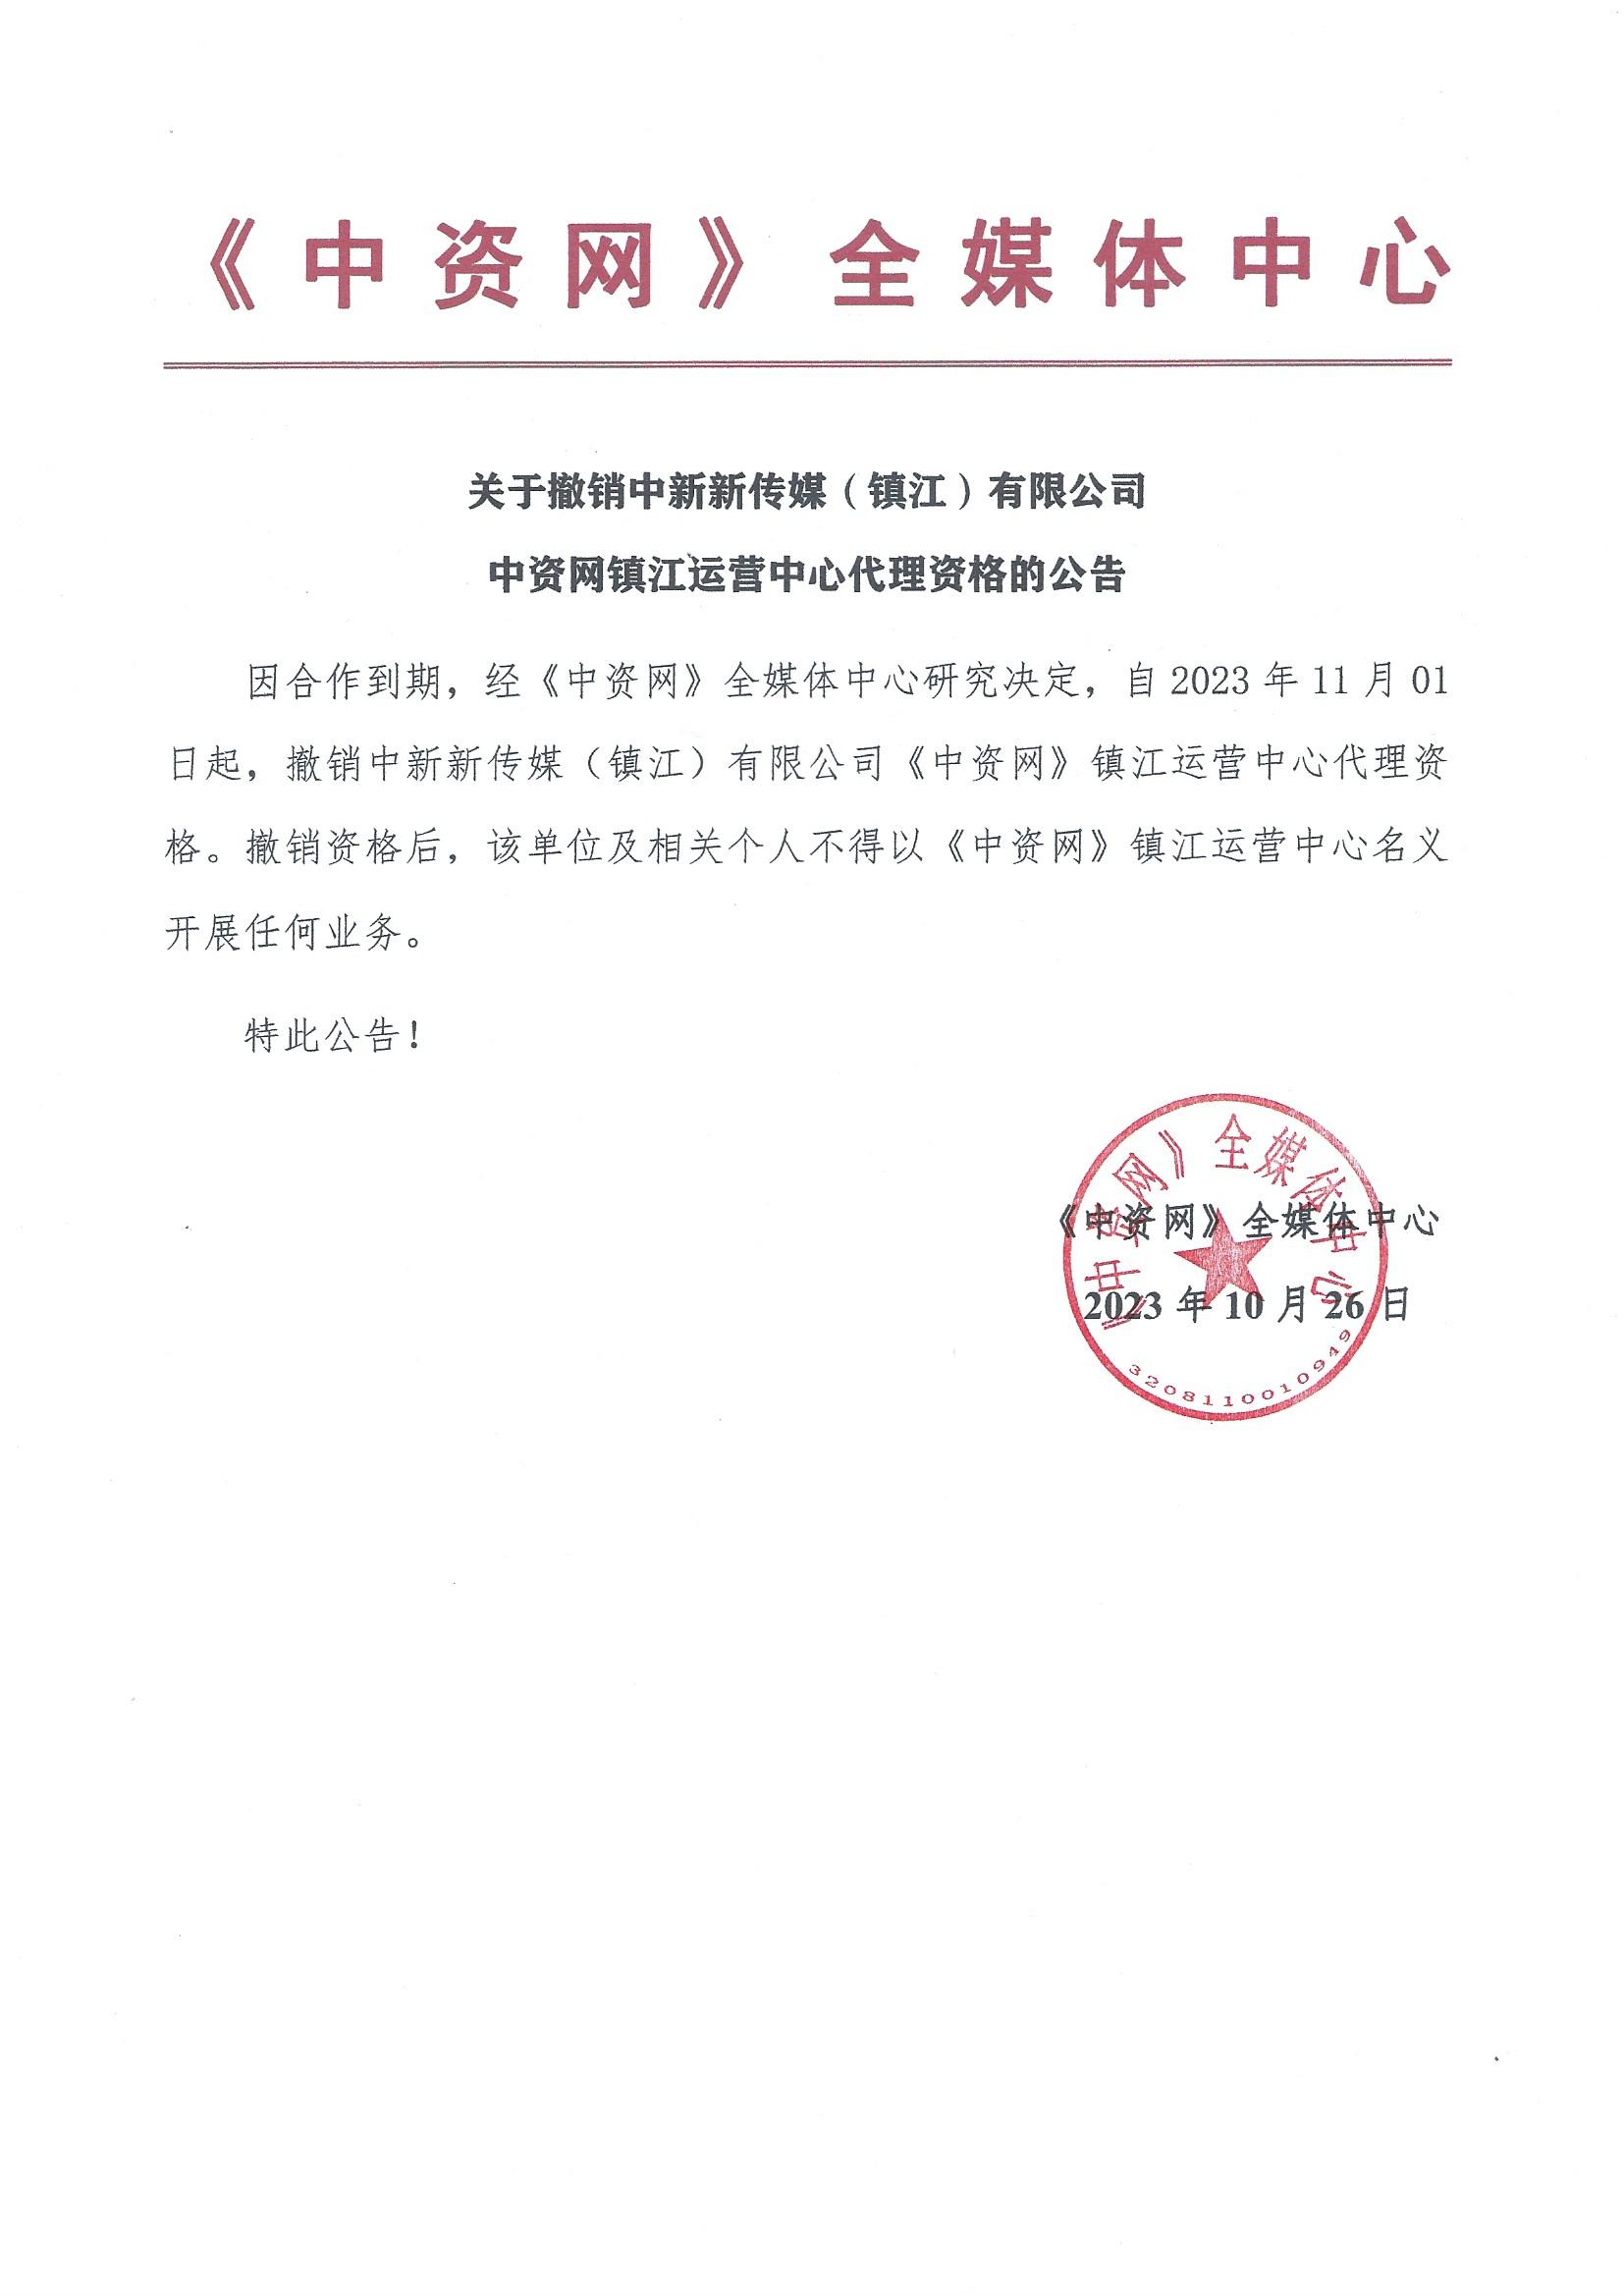 关于撤销中新新传媒(镇江)有限公司中资网镇江运营中心代理资格的公告   